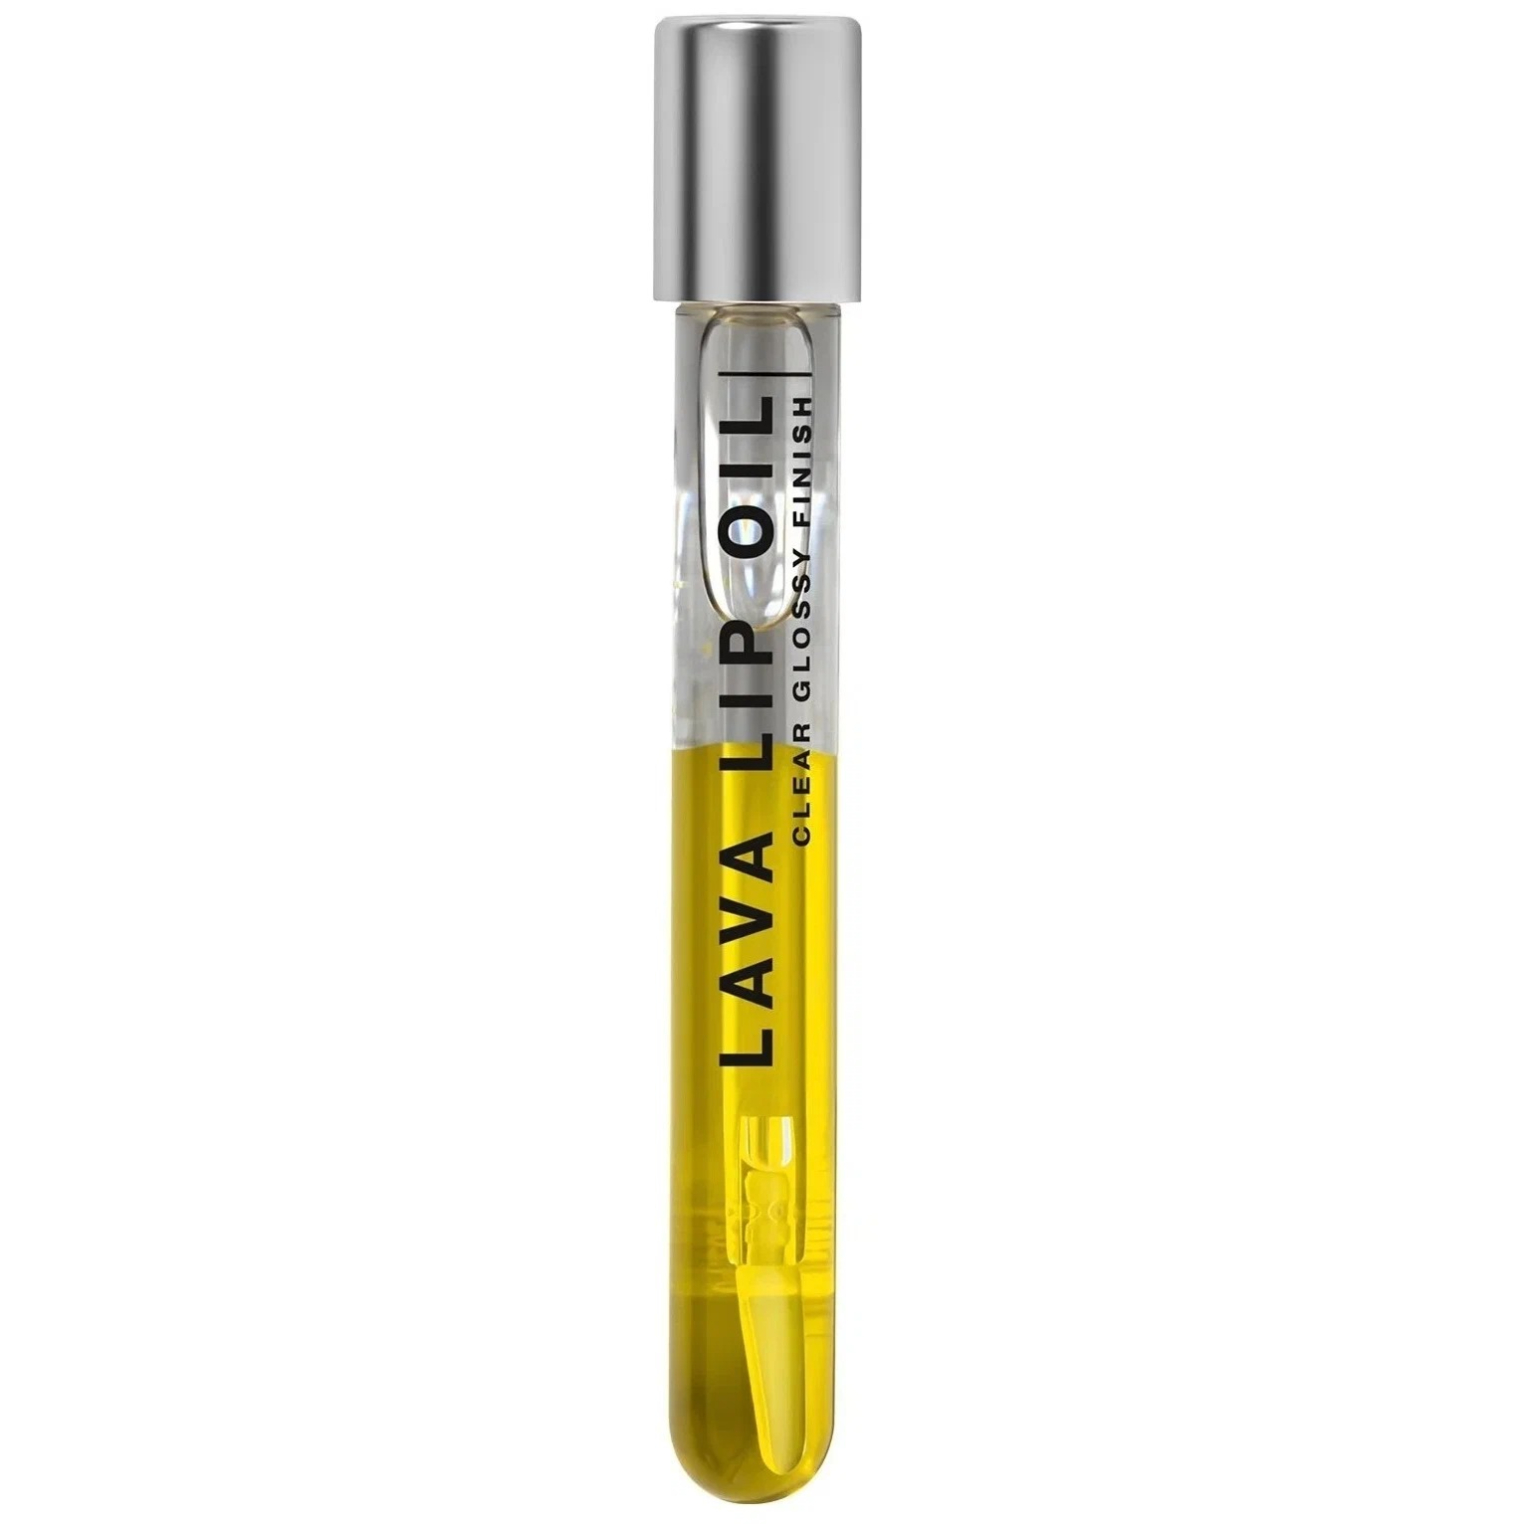 Двухфазное масло для губ Influence BEAUTY LAVA LIP OIL увлажняющее, уход и глянцевый финиш, тон 02: прозрачный желтый, 6мл - фото 1